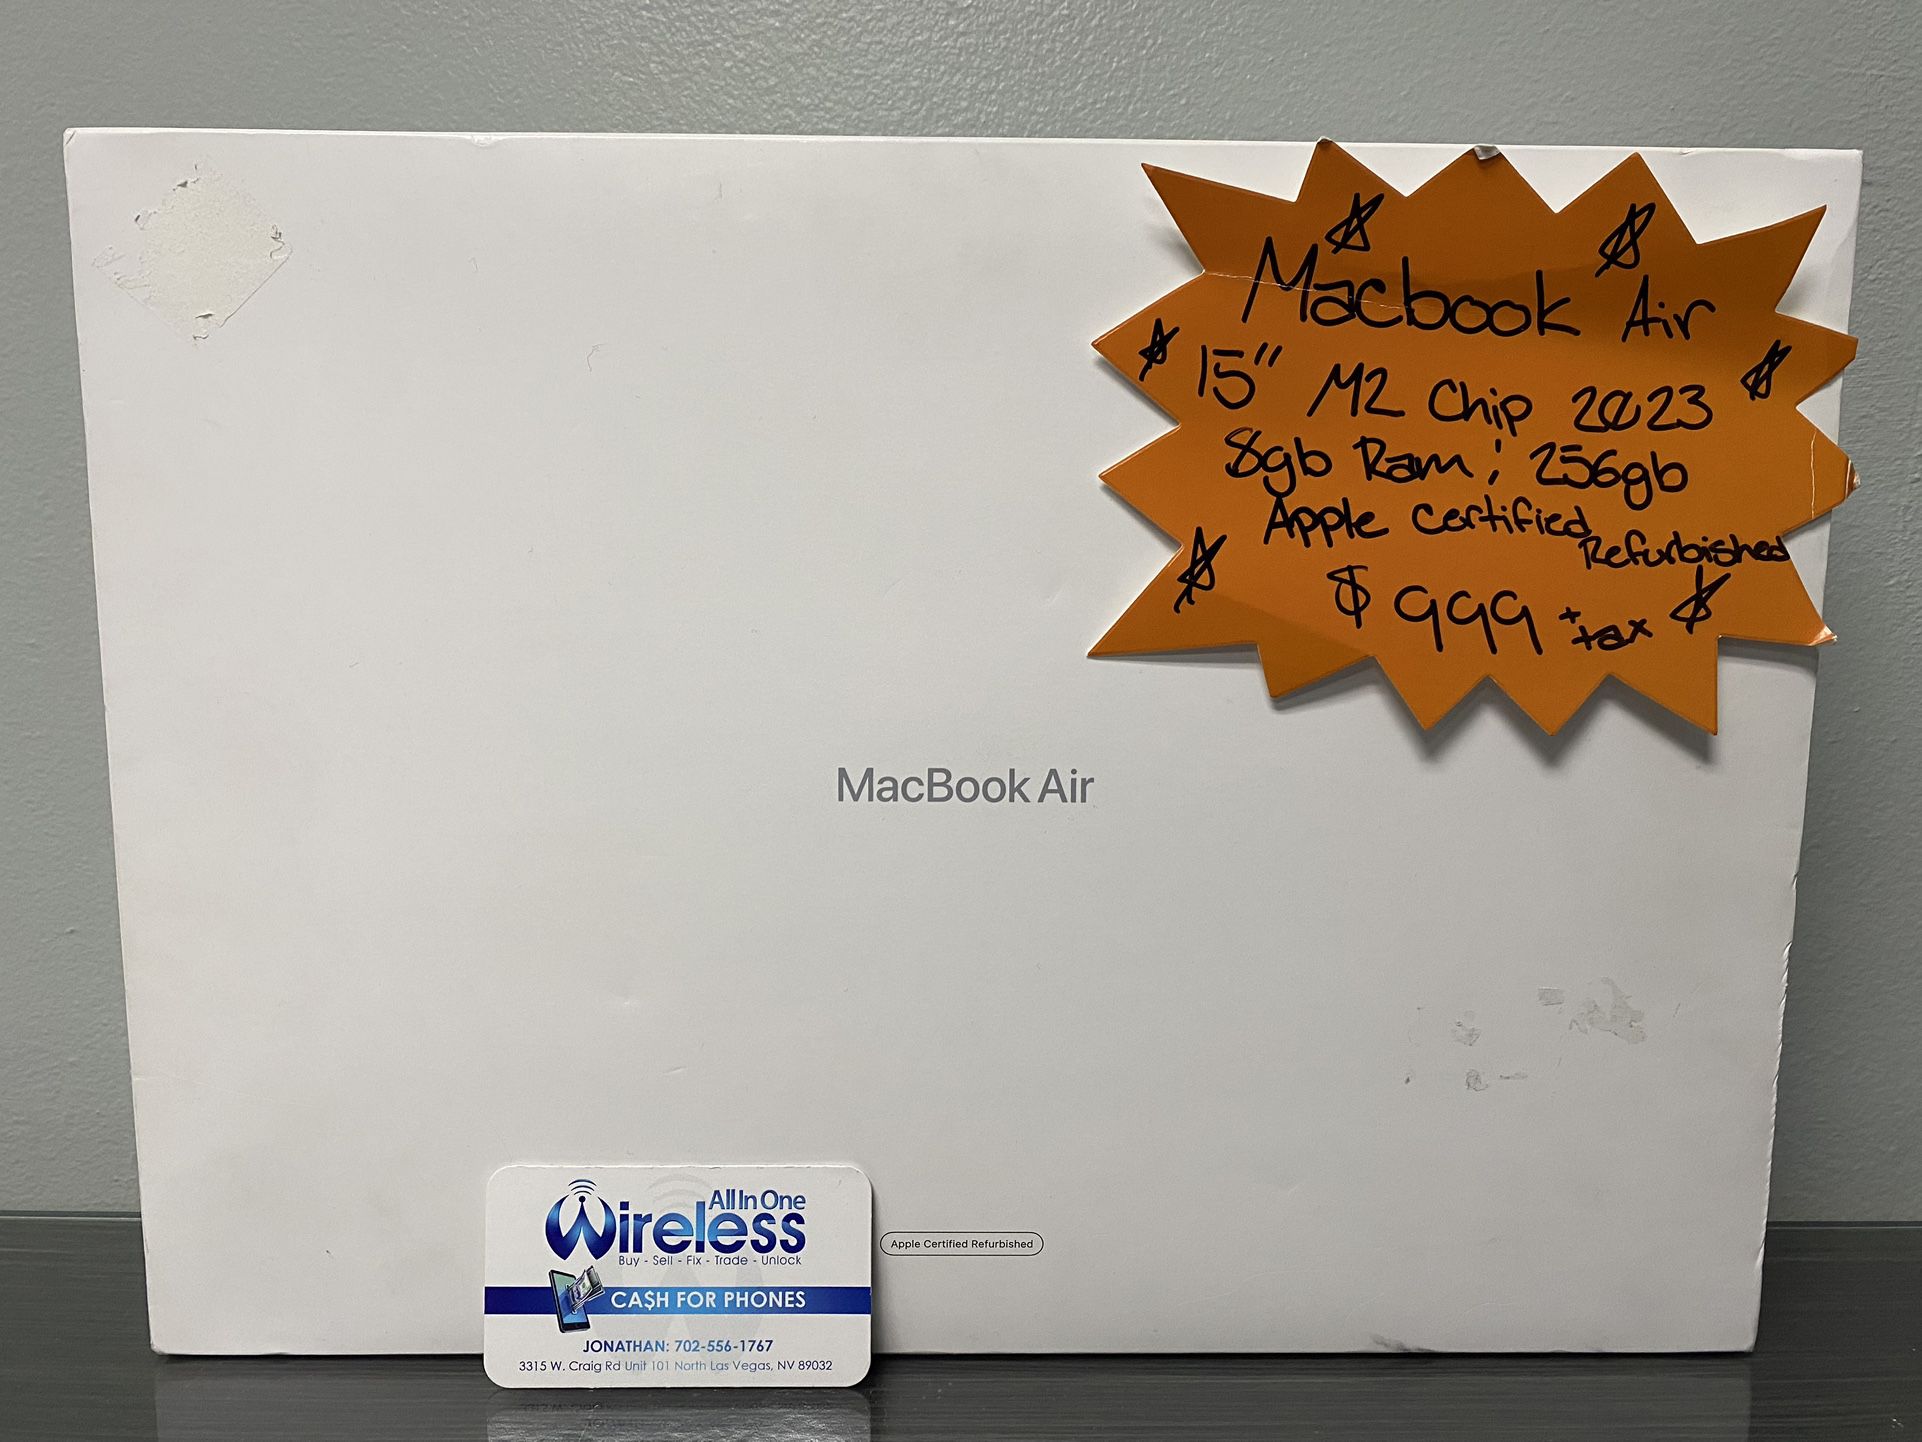 MacBook Air 15” M2 2023